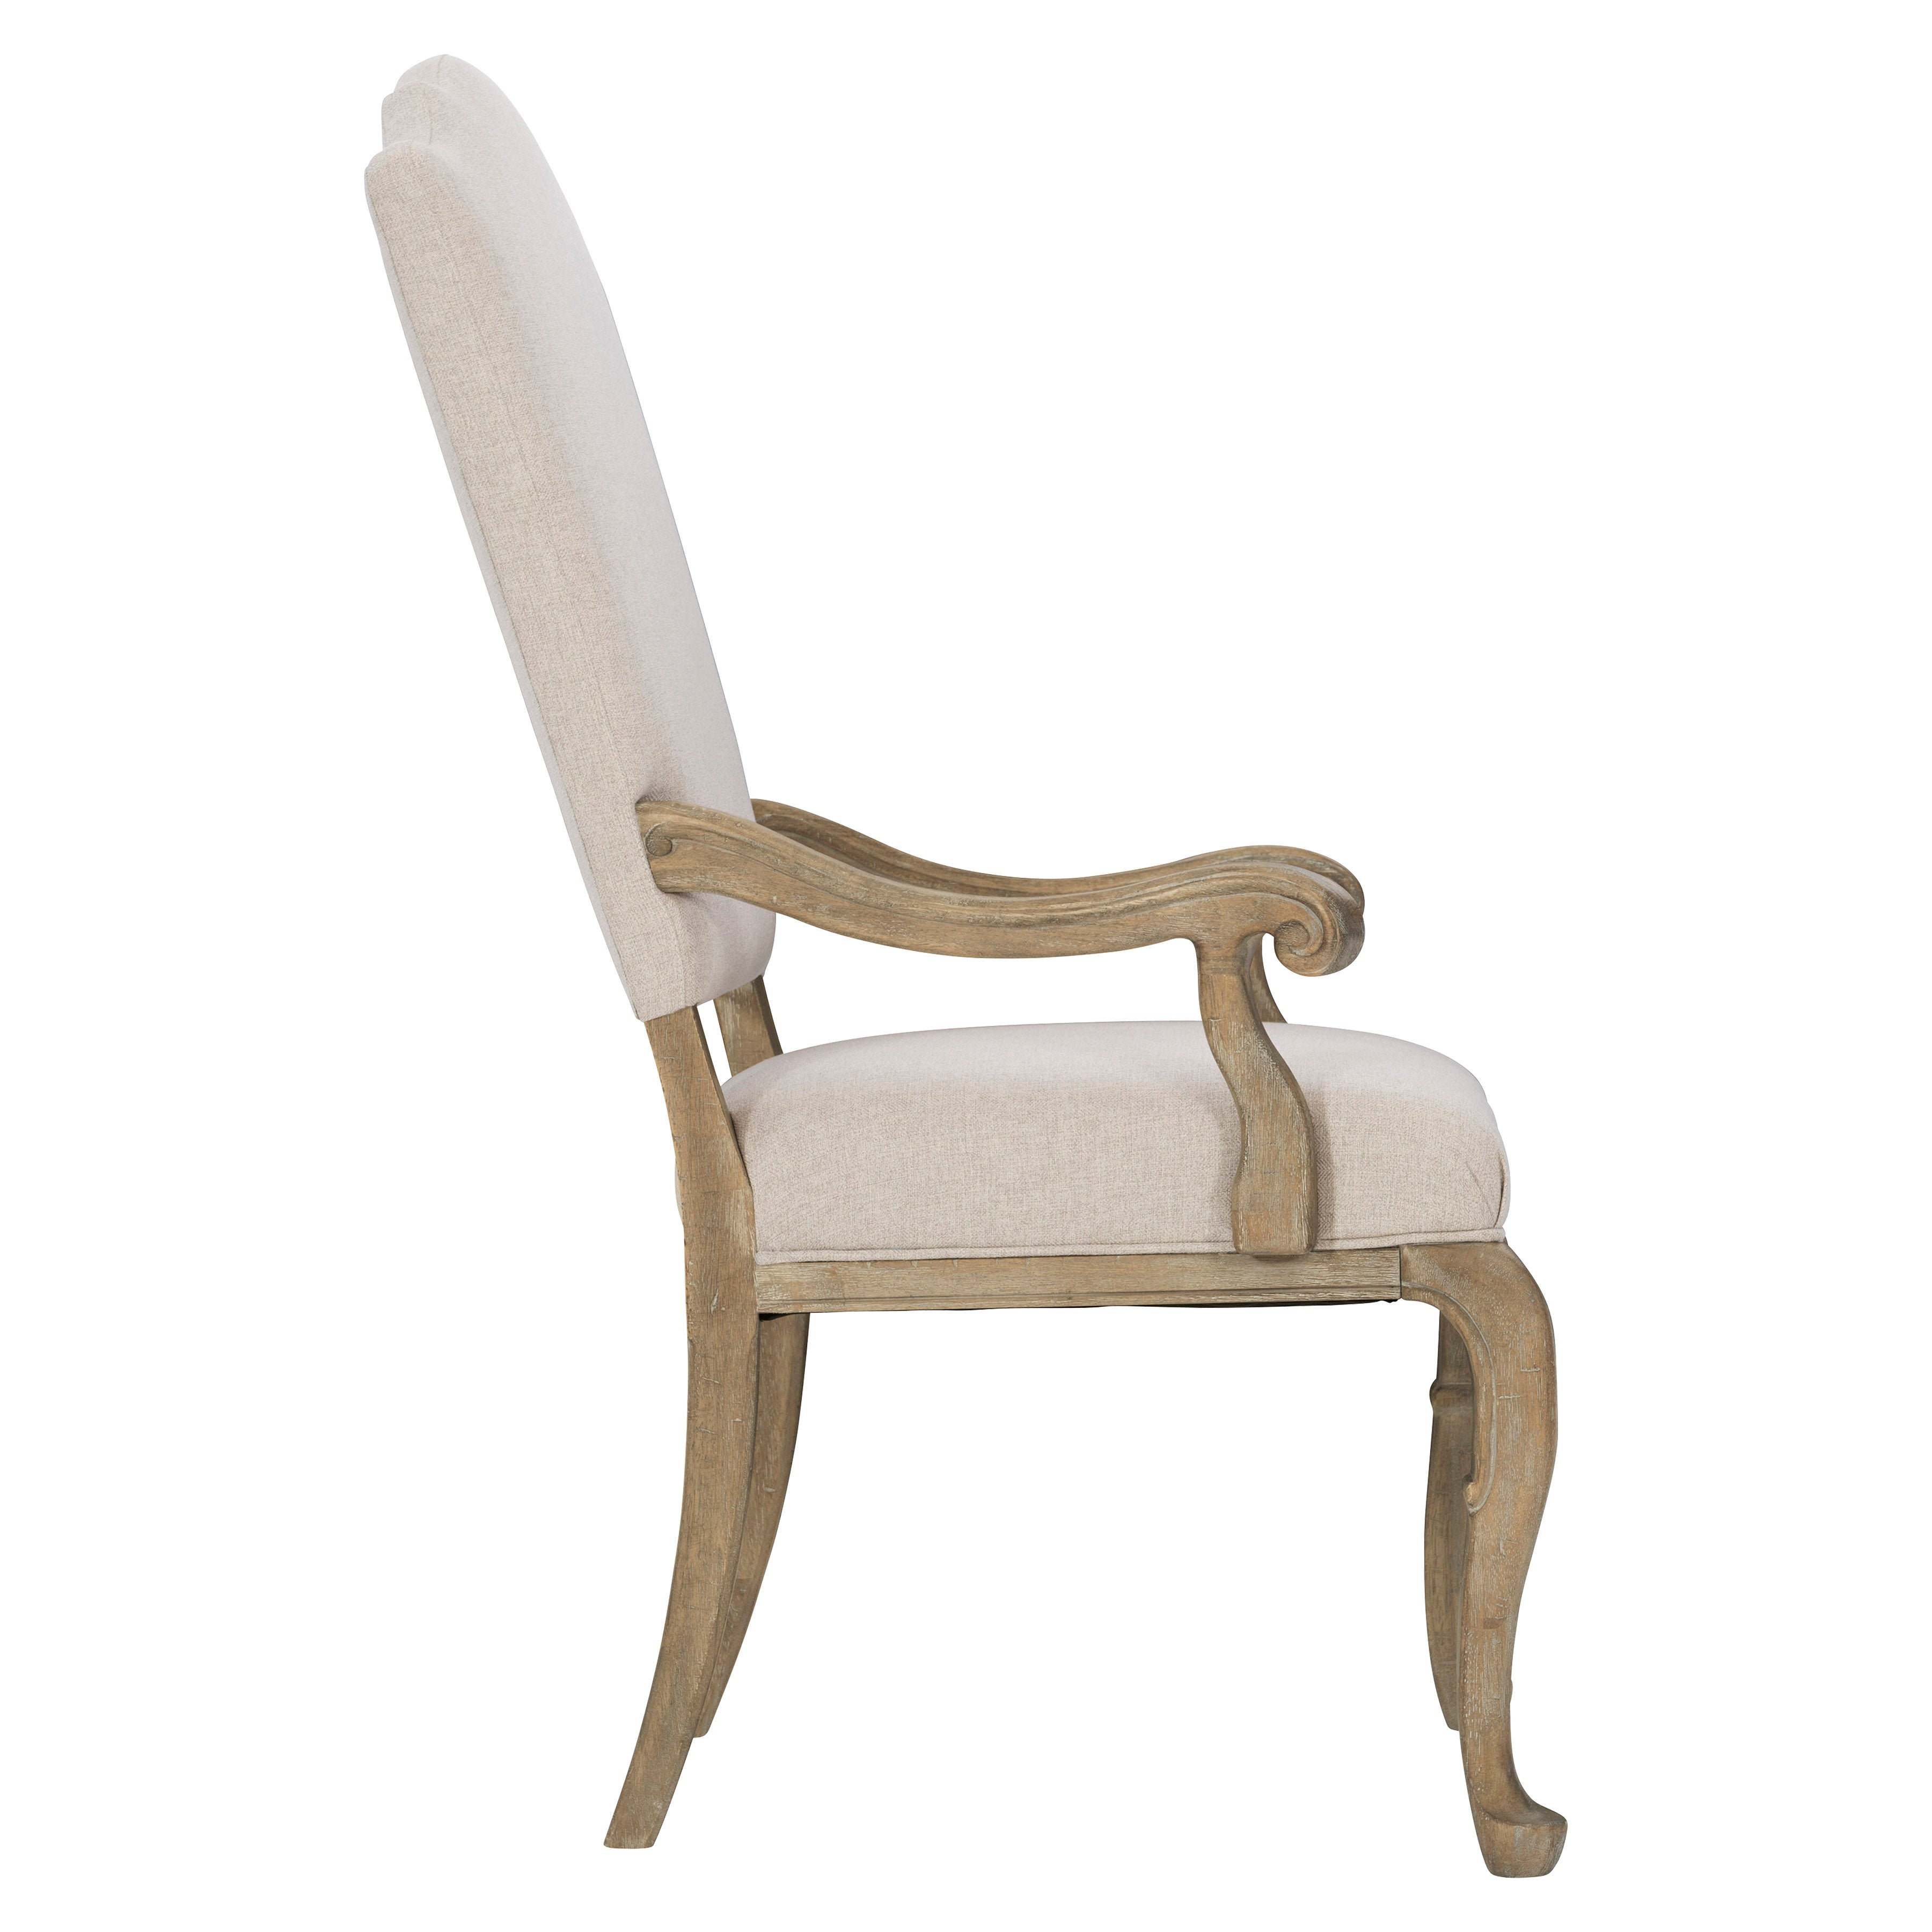 Villa Toscana Host Arm Chair